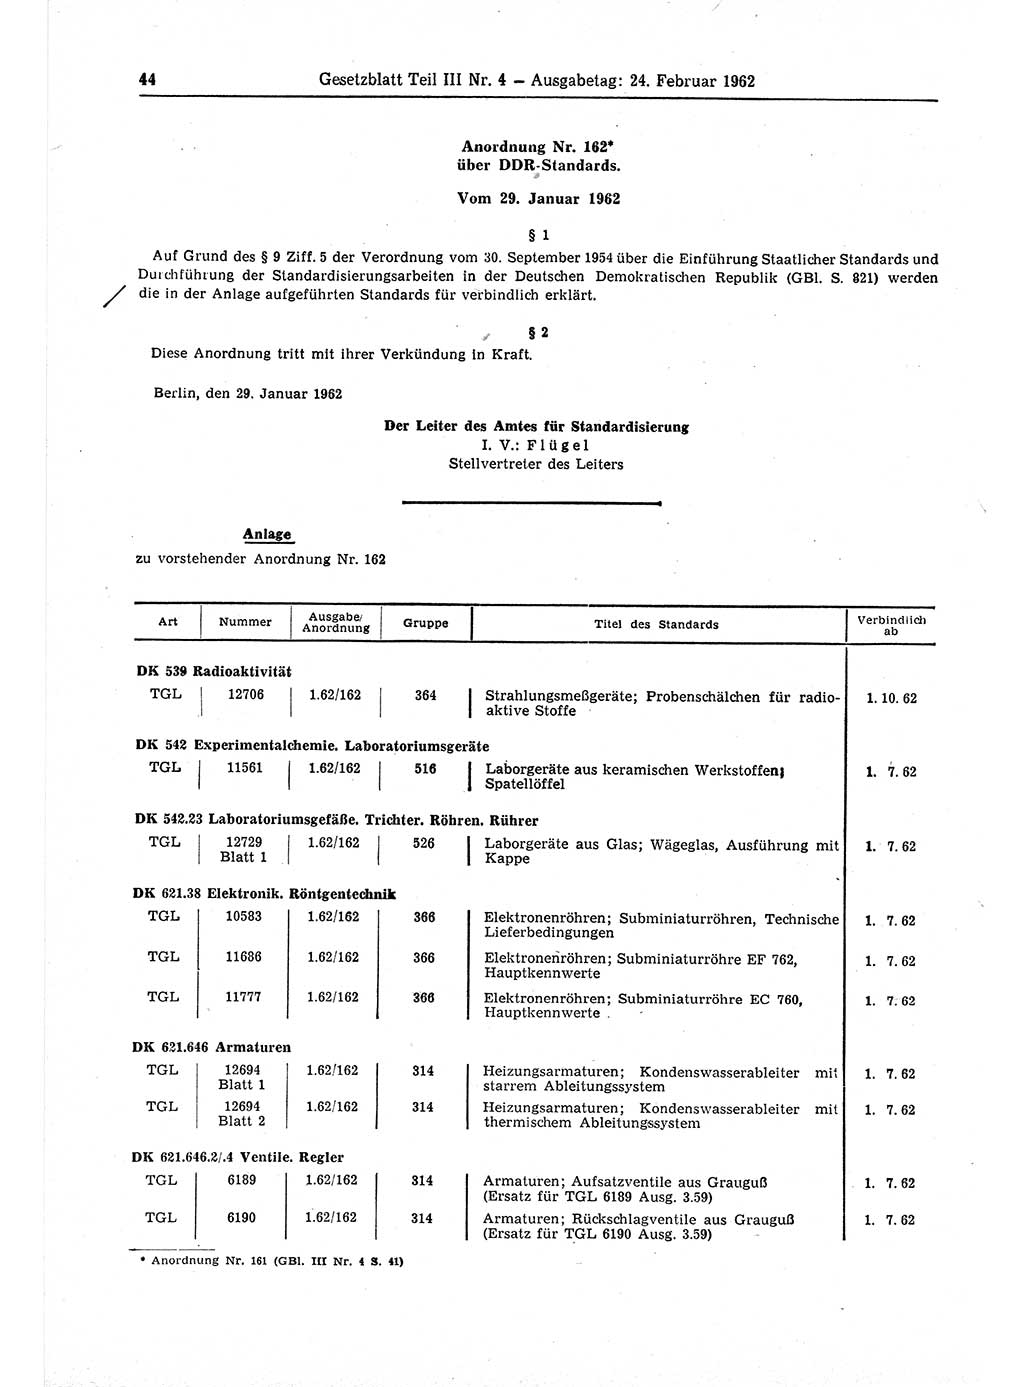 Gesetzblatt (GBl.) der Deutschen Demokratischen Republik (DDR) Teil ⅠⅠⅠ 1962, Seite 44 (GBl. DDR ⅠⅠⅠ 1962, S. 44)